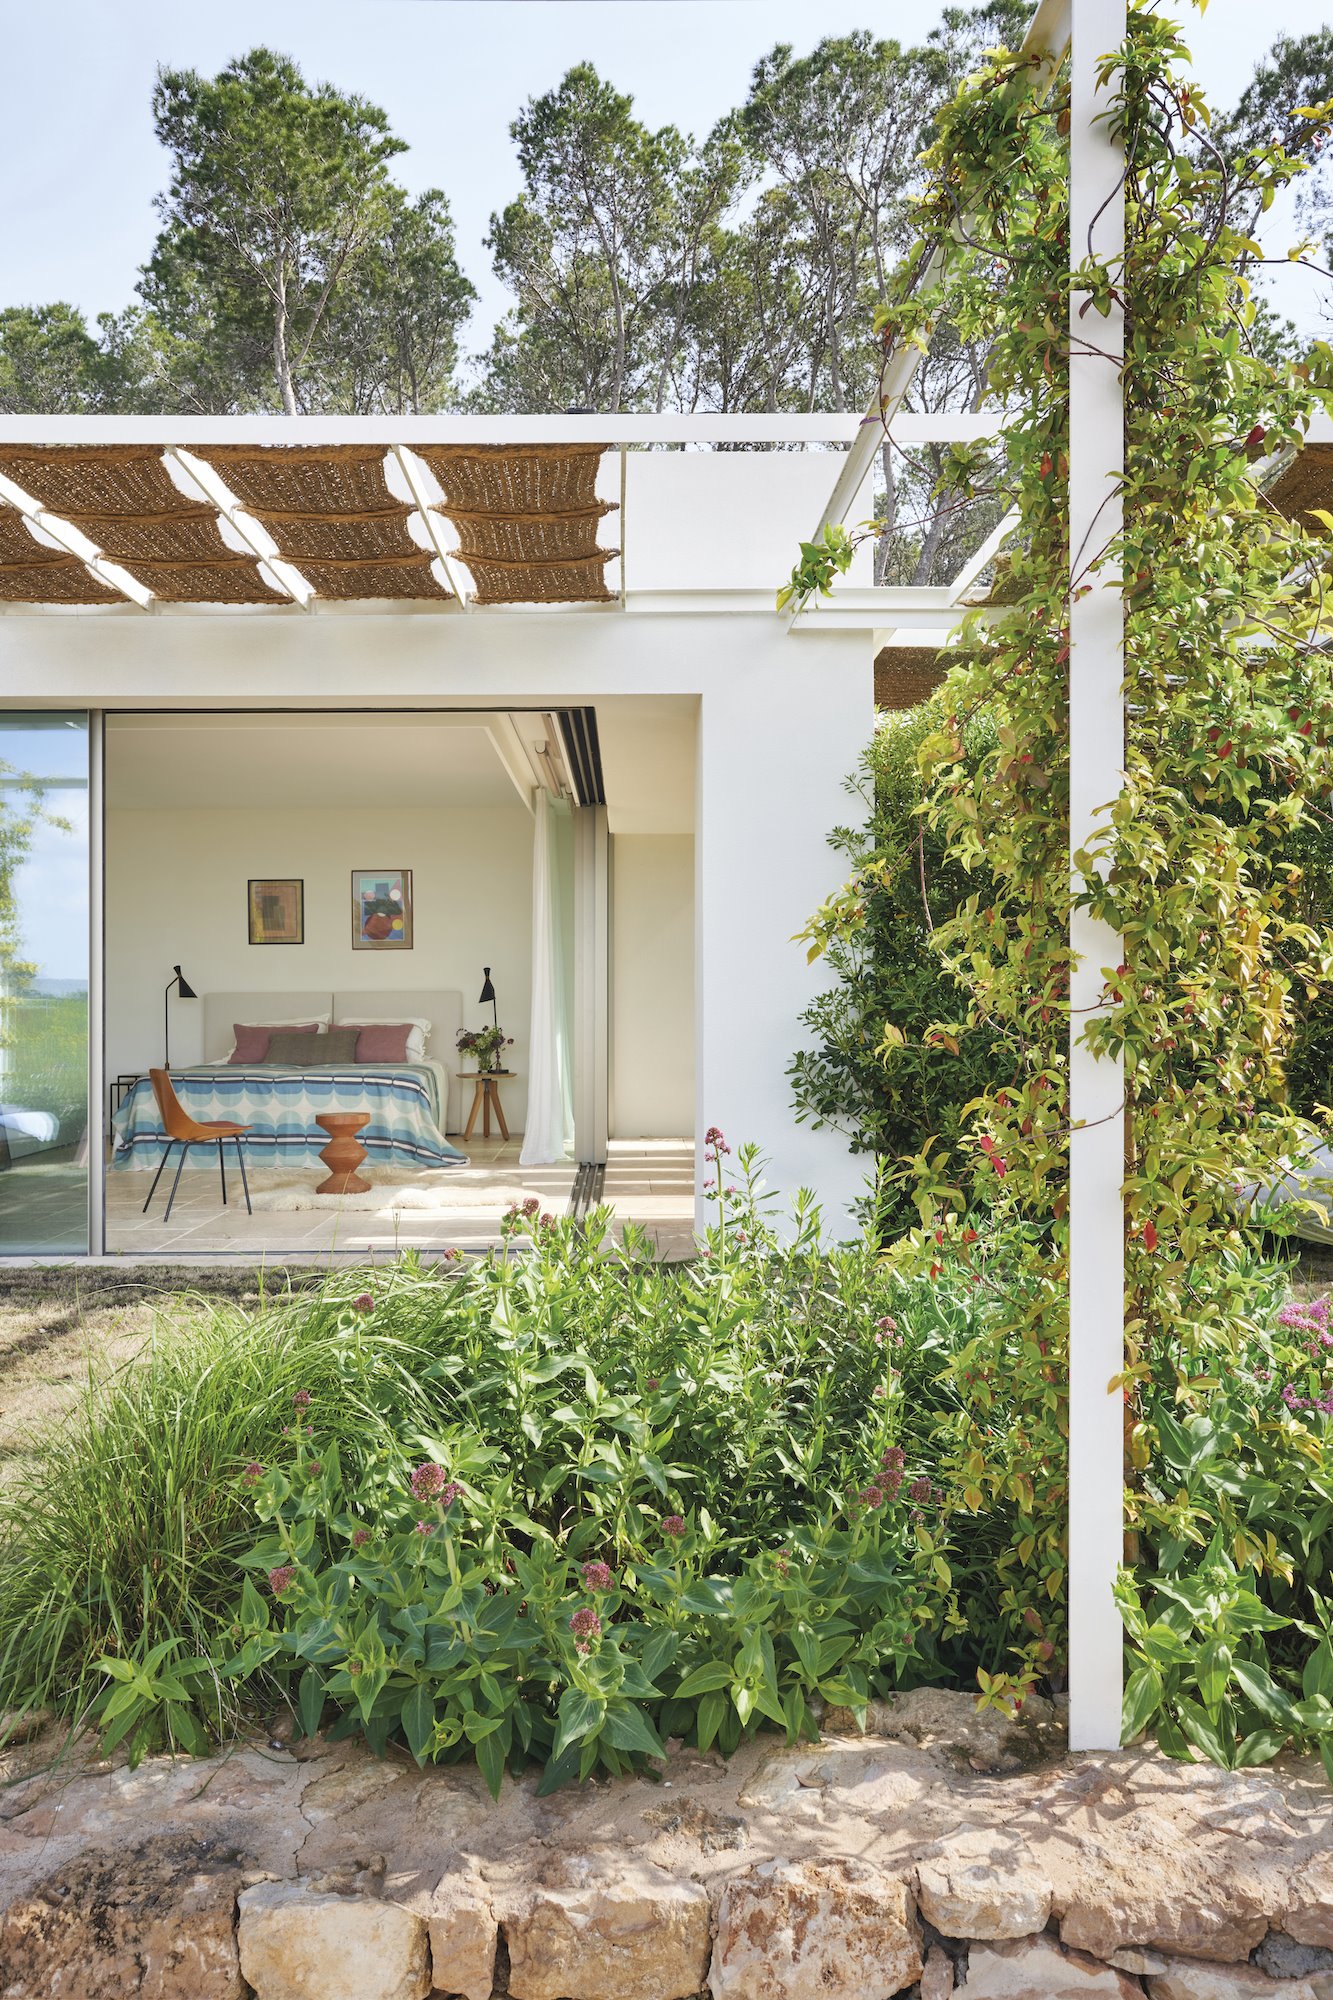 Casa moderna en Ibiza con fachada blanca y jardines dormitorio